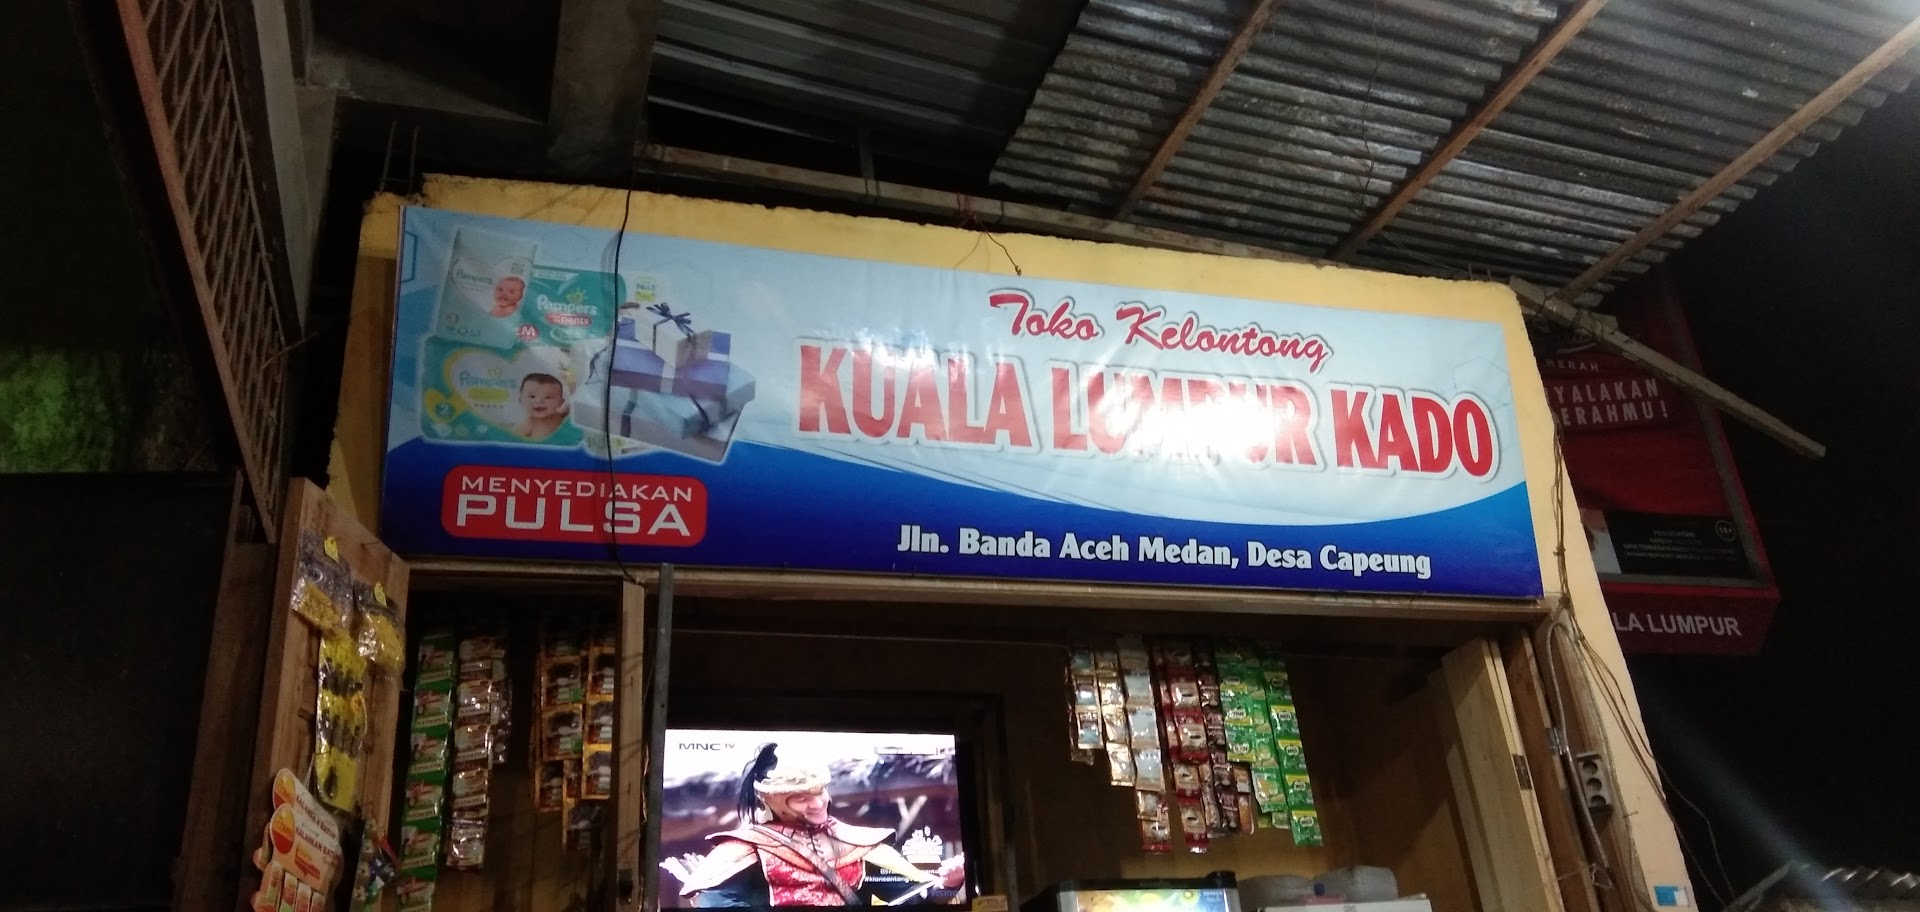 Kuala Lumpur Kado Photo